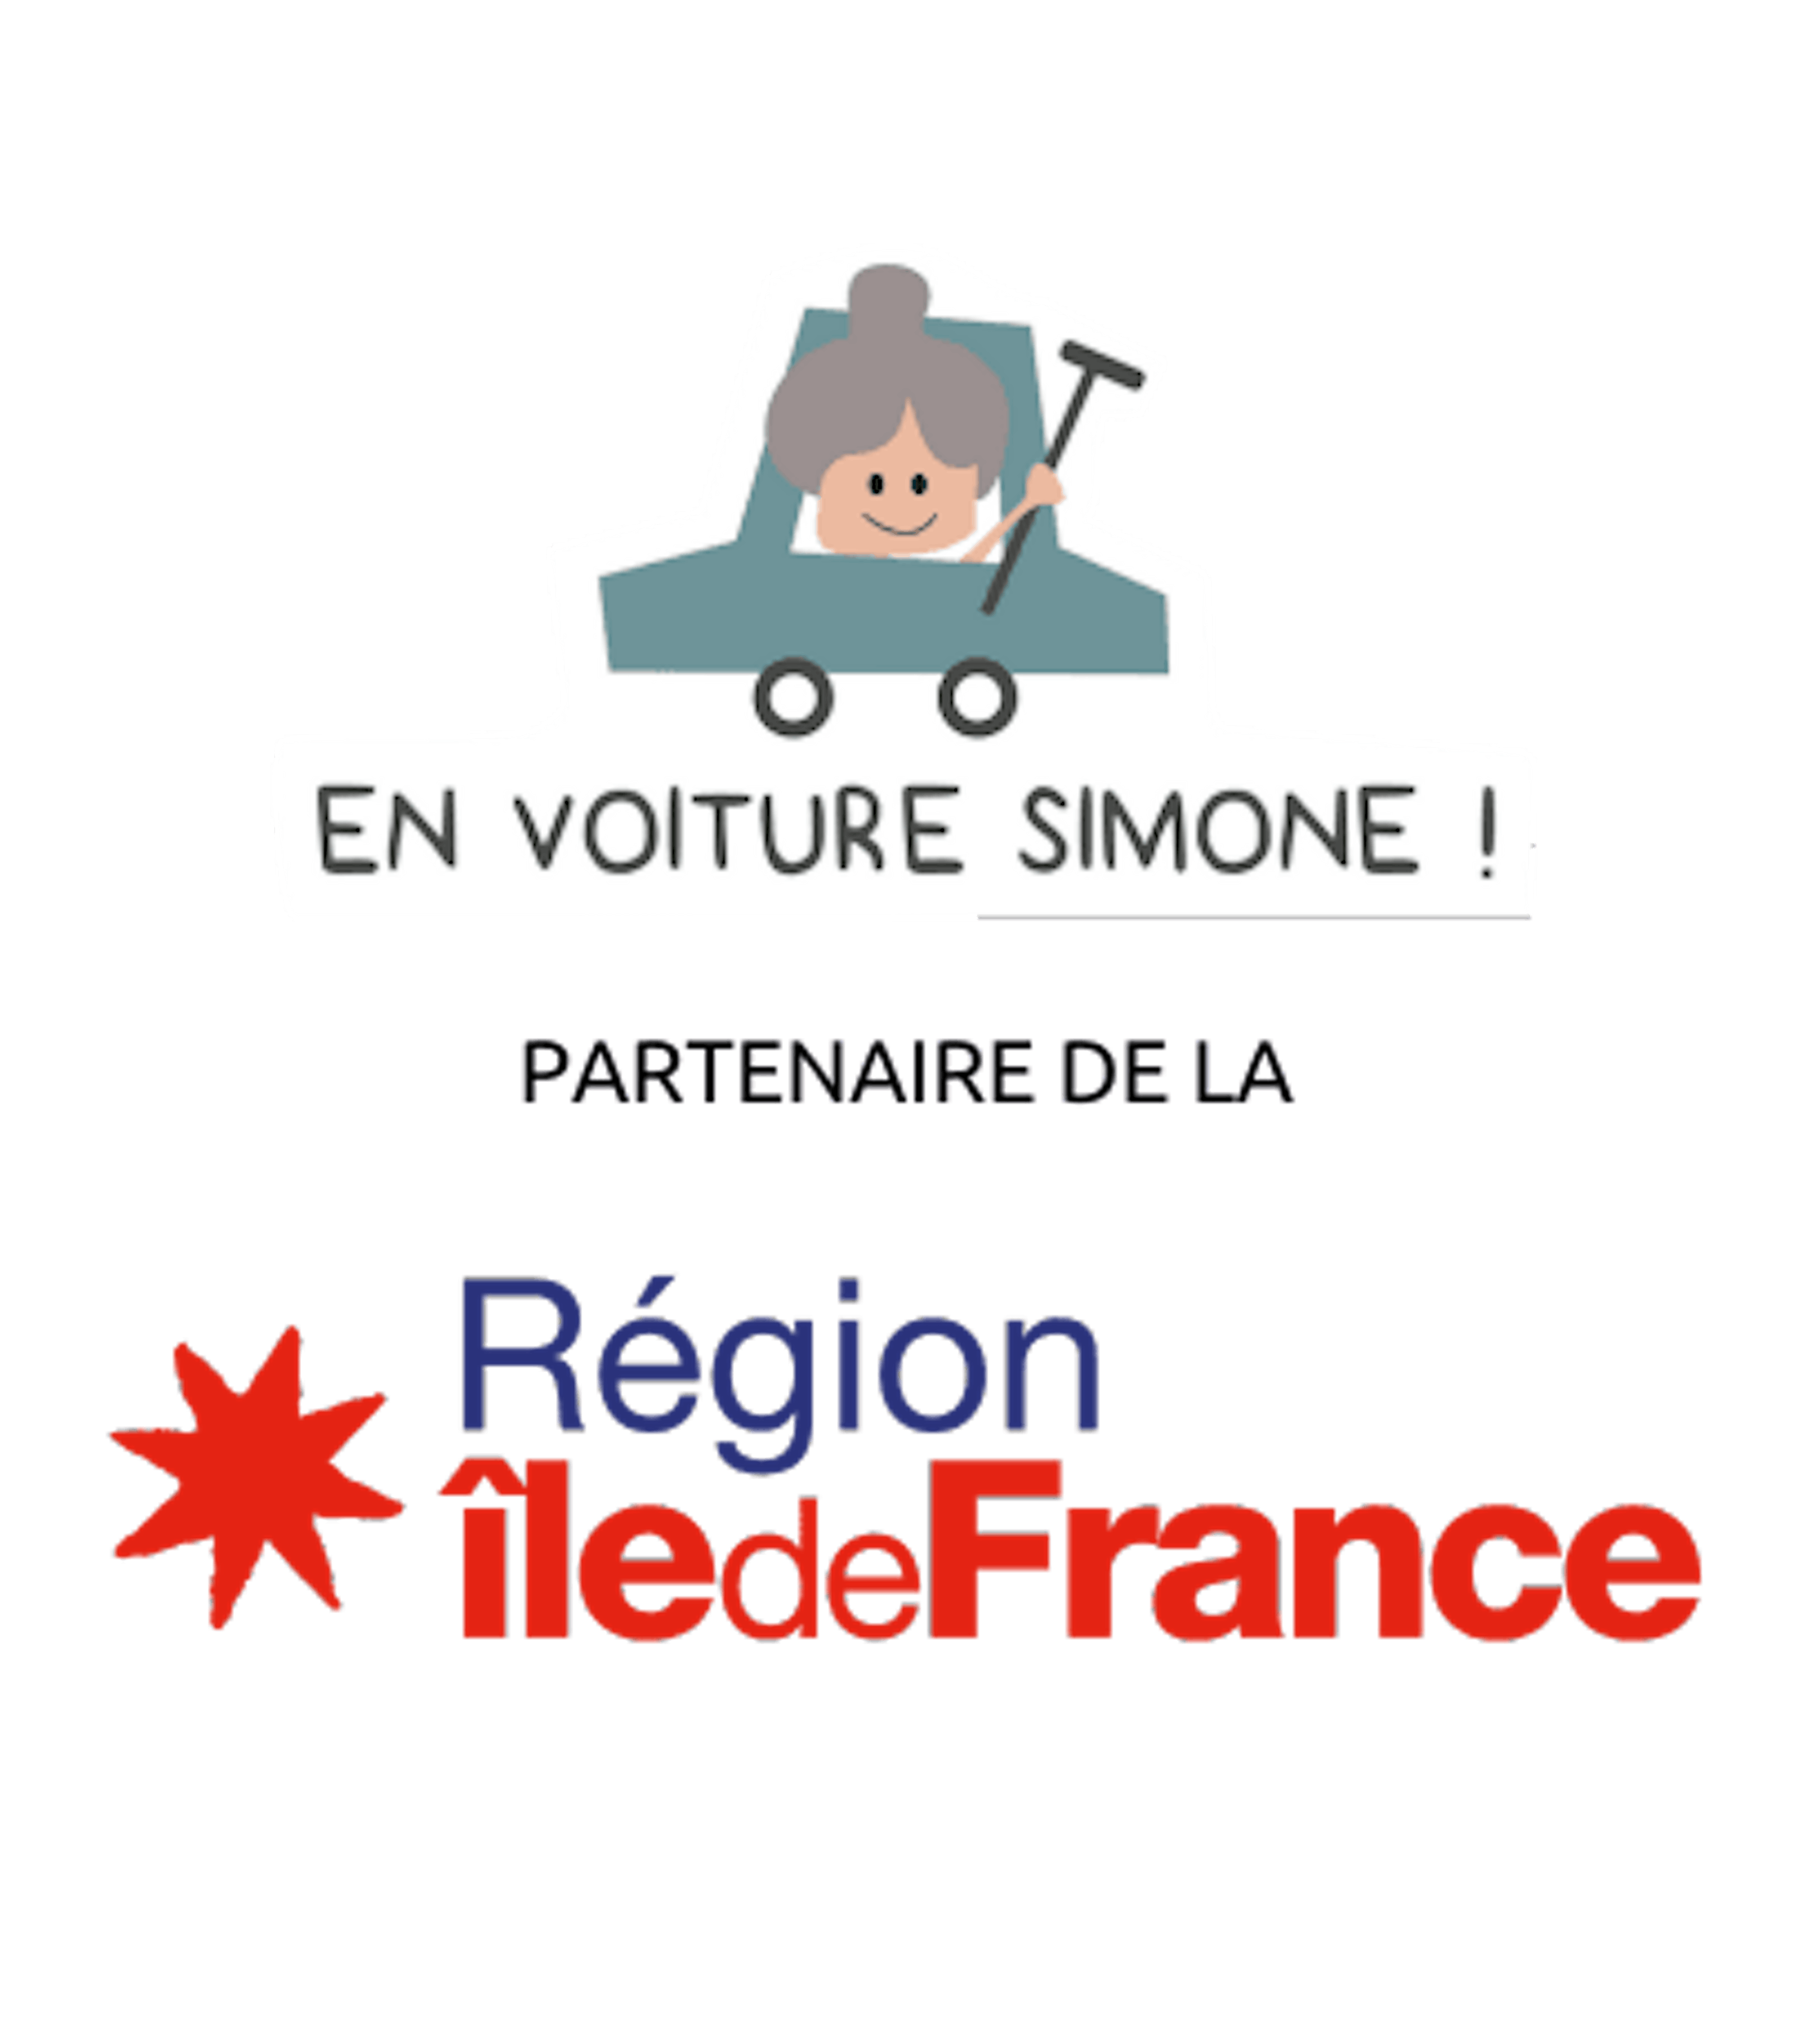 partenariat-en-voiture-simone-region-ile-de-france-406x458-v2.png